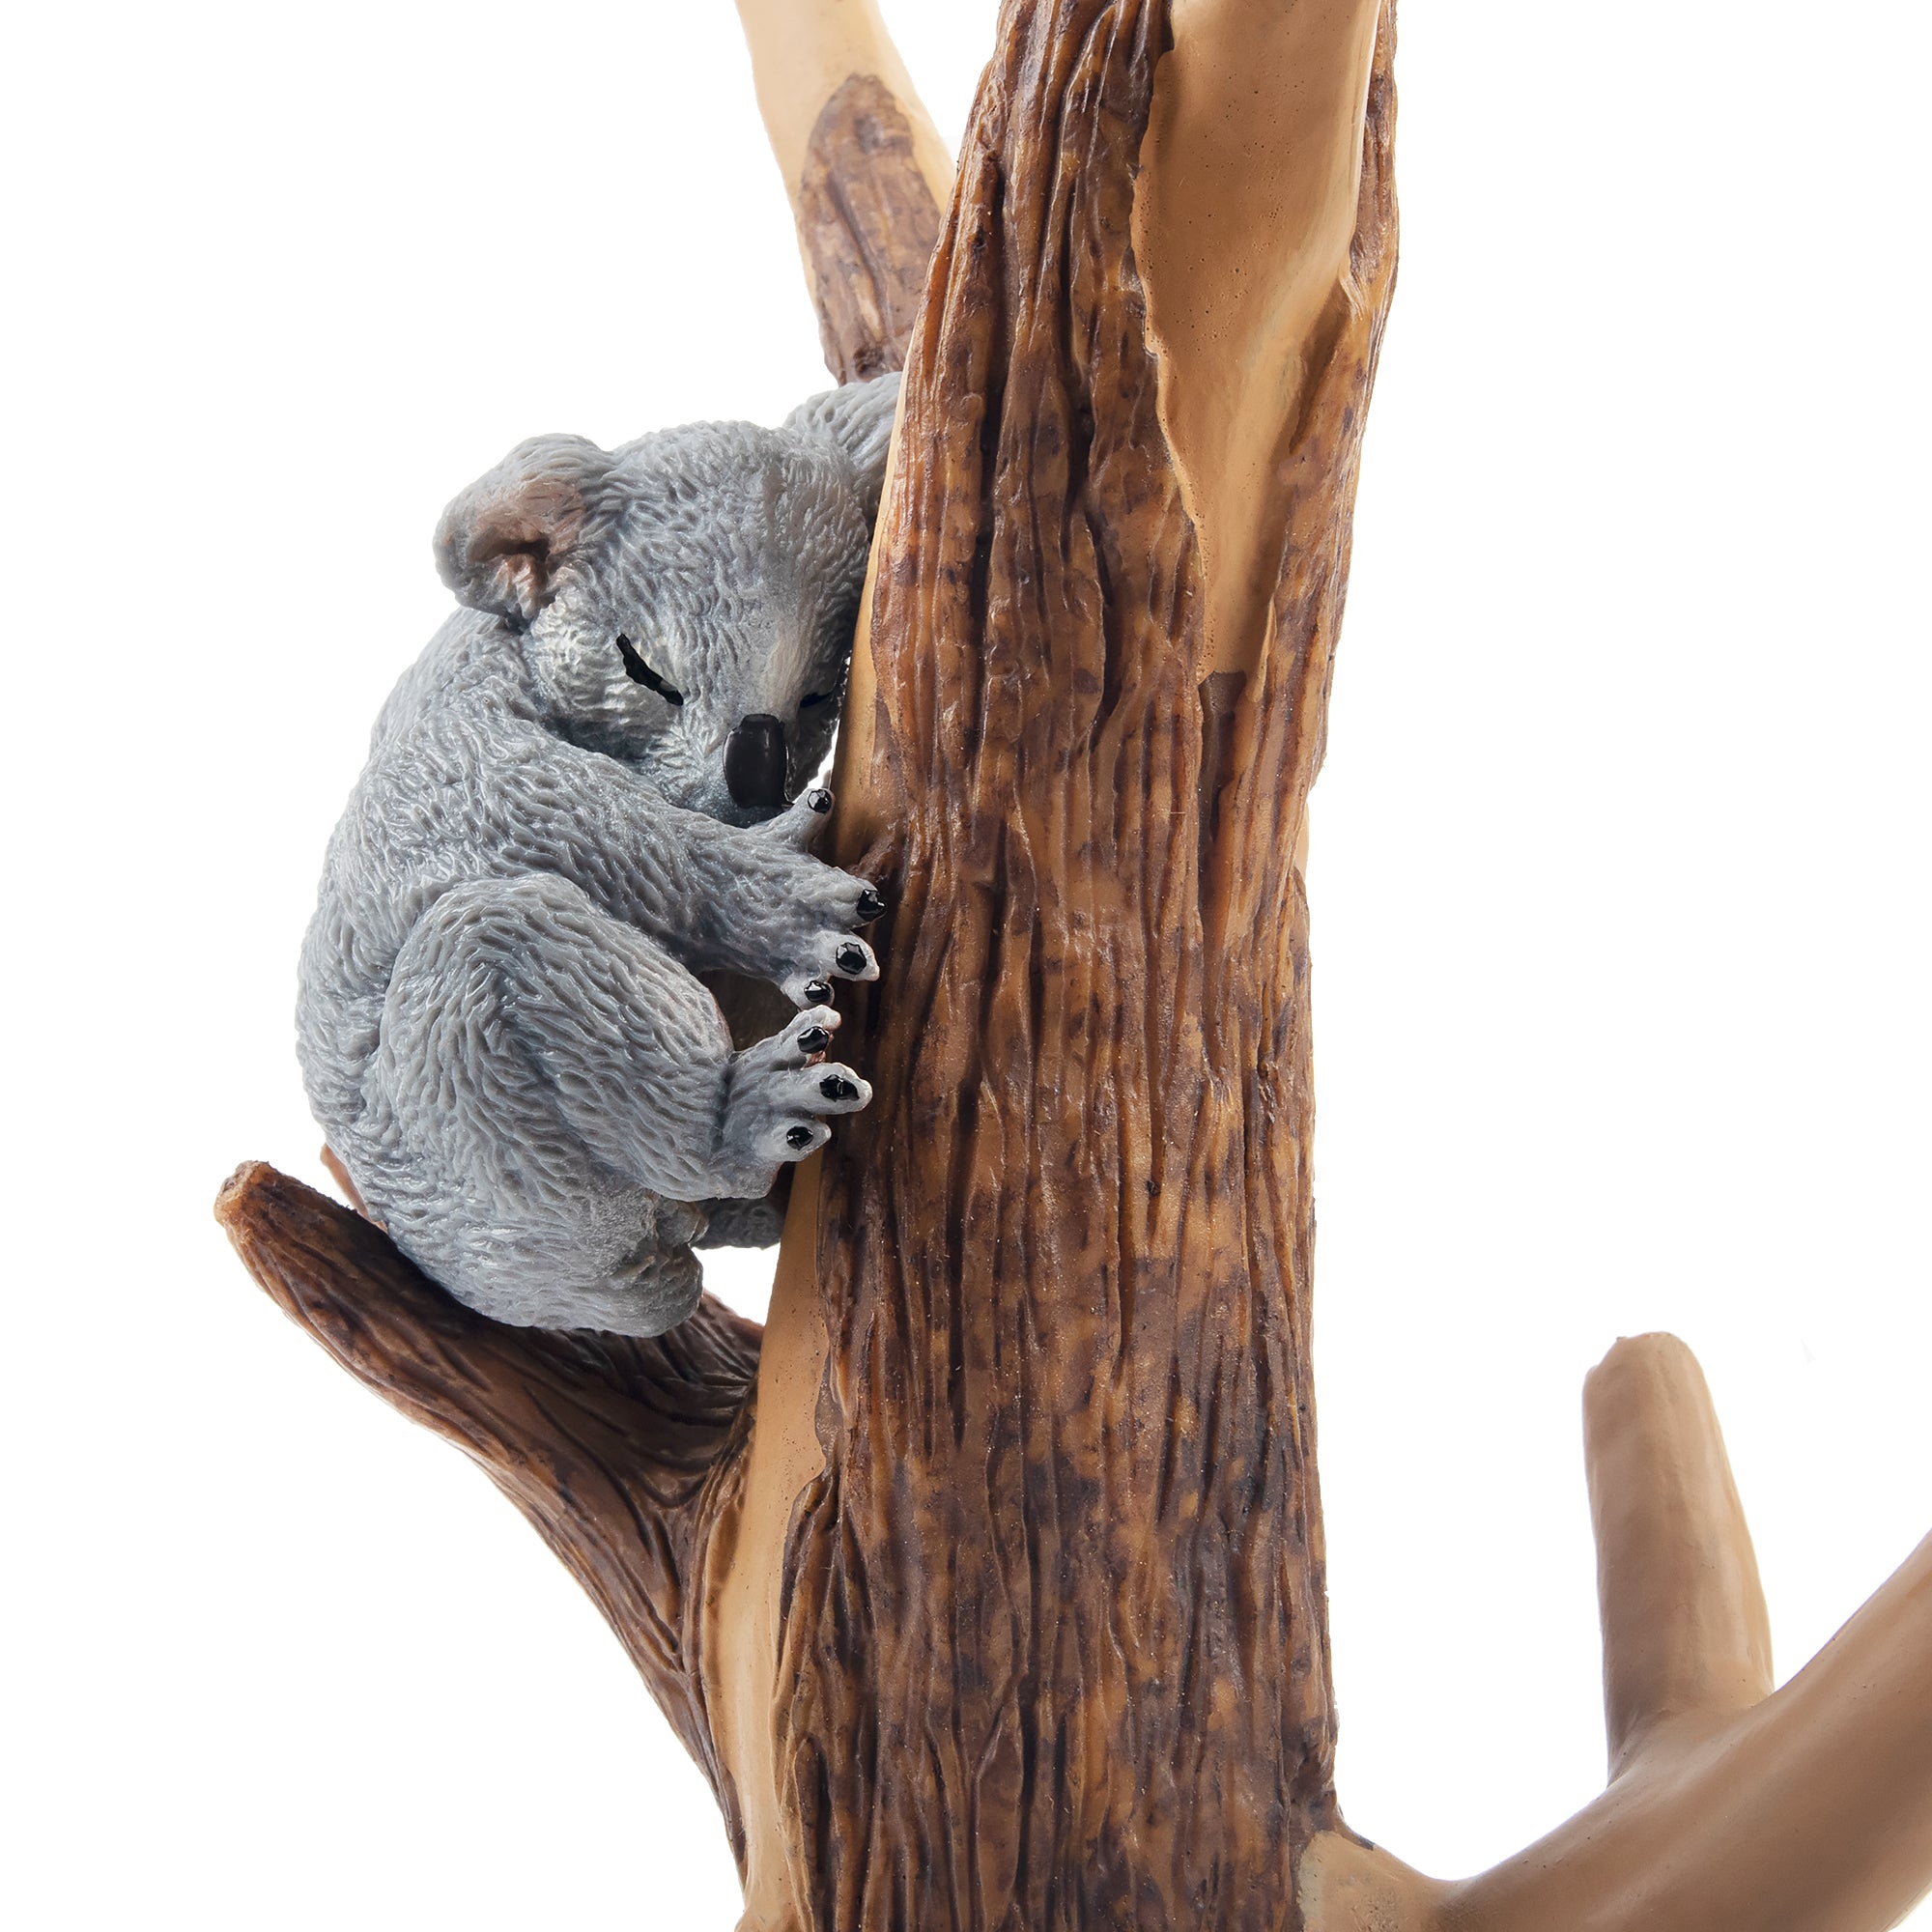 Toymany Sleeping Koala-on tree